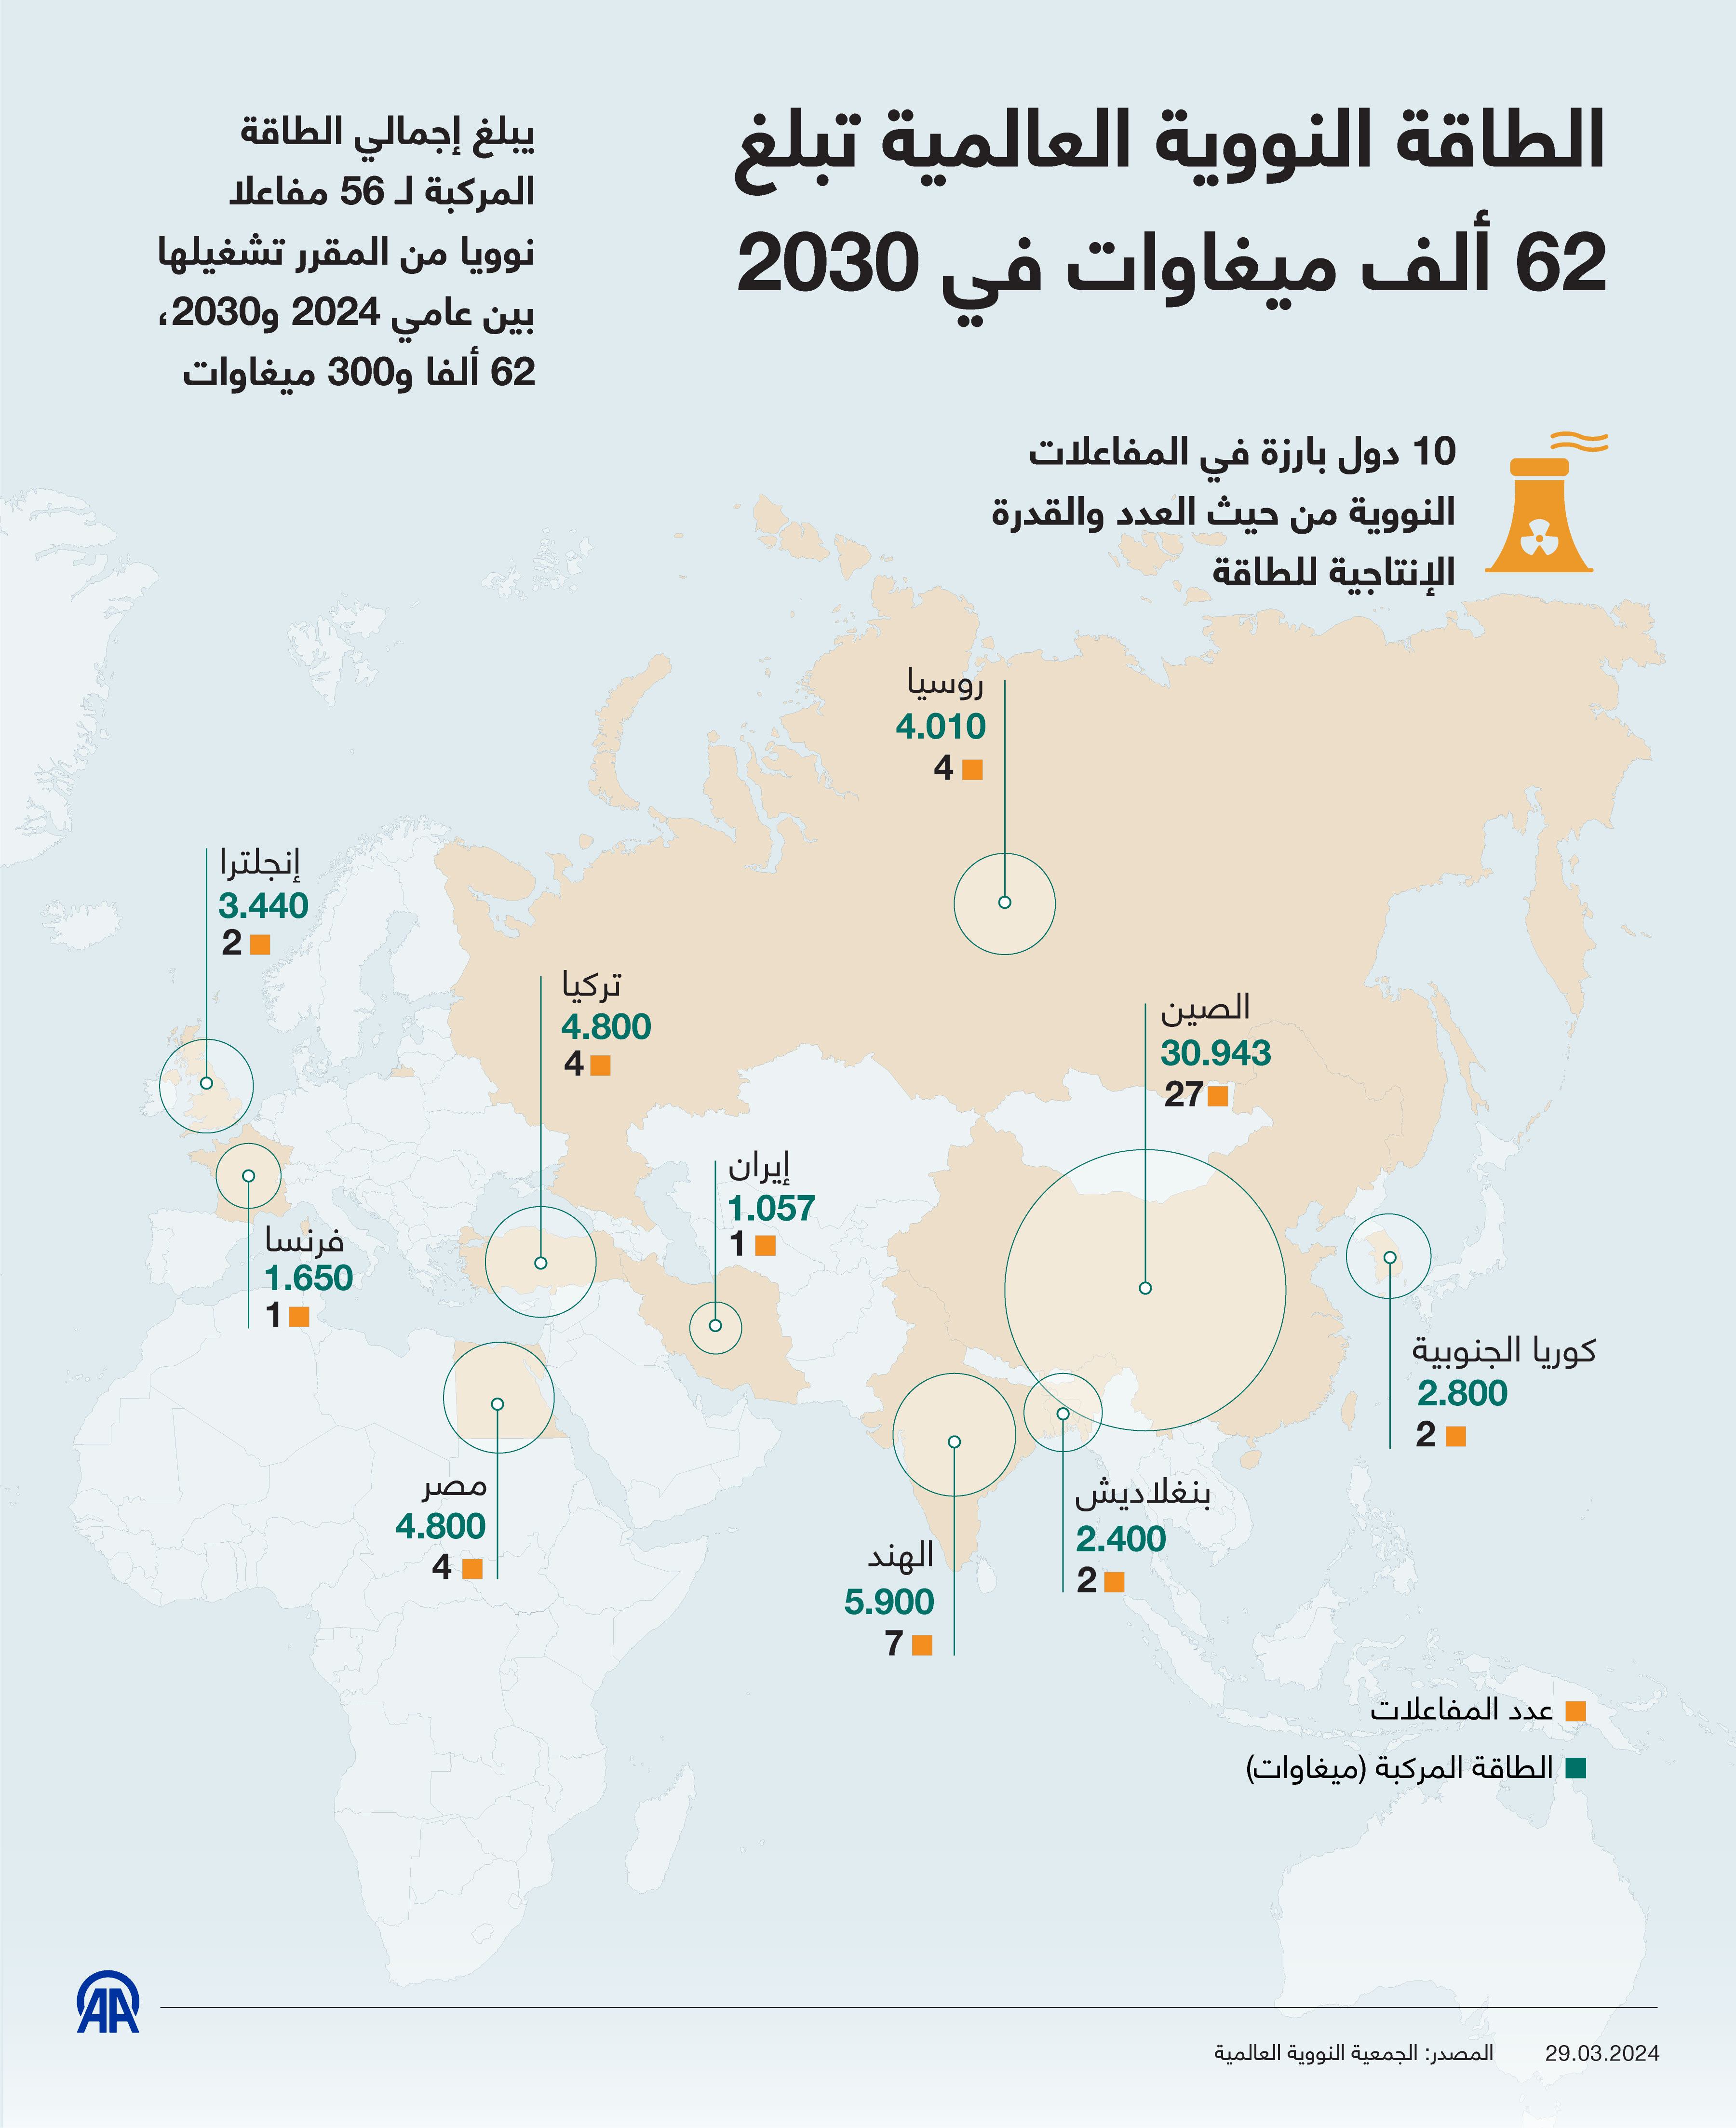 الطاقة النووية العالمية تبلغ 62 ألف ميغاوات في 2030